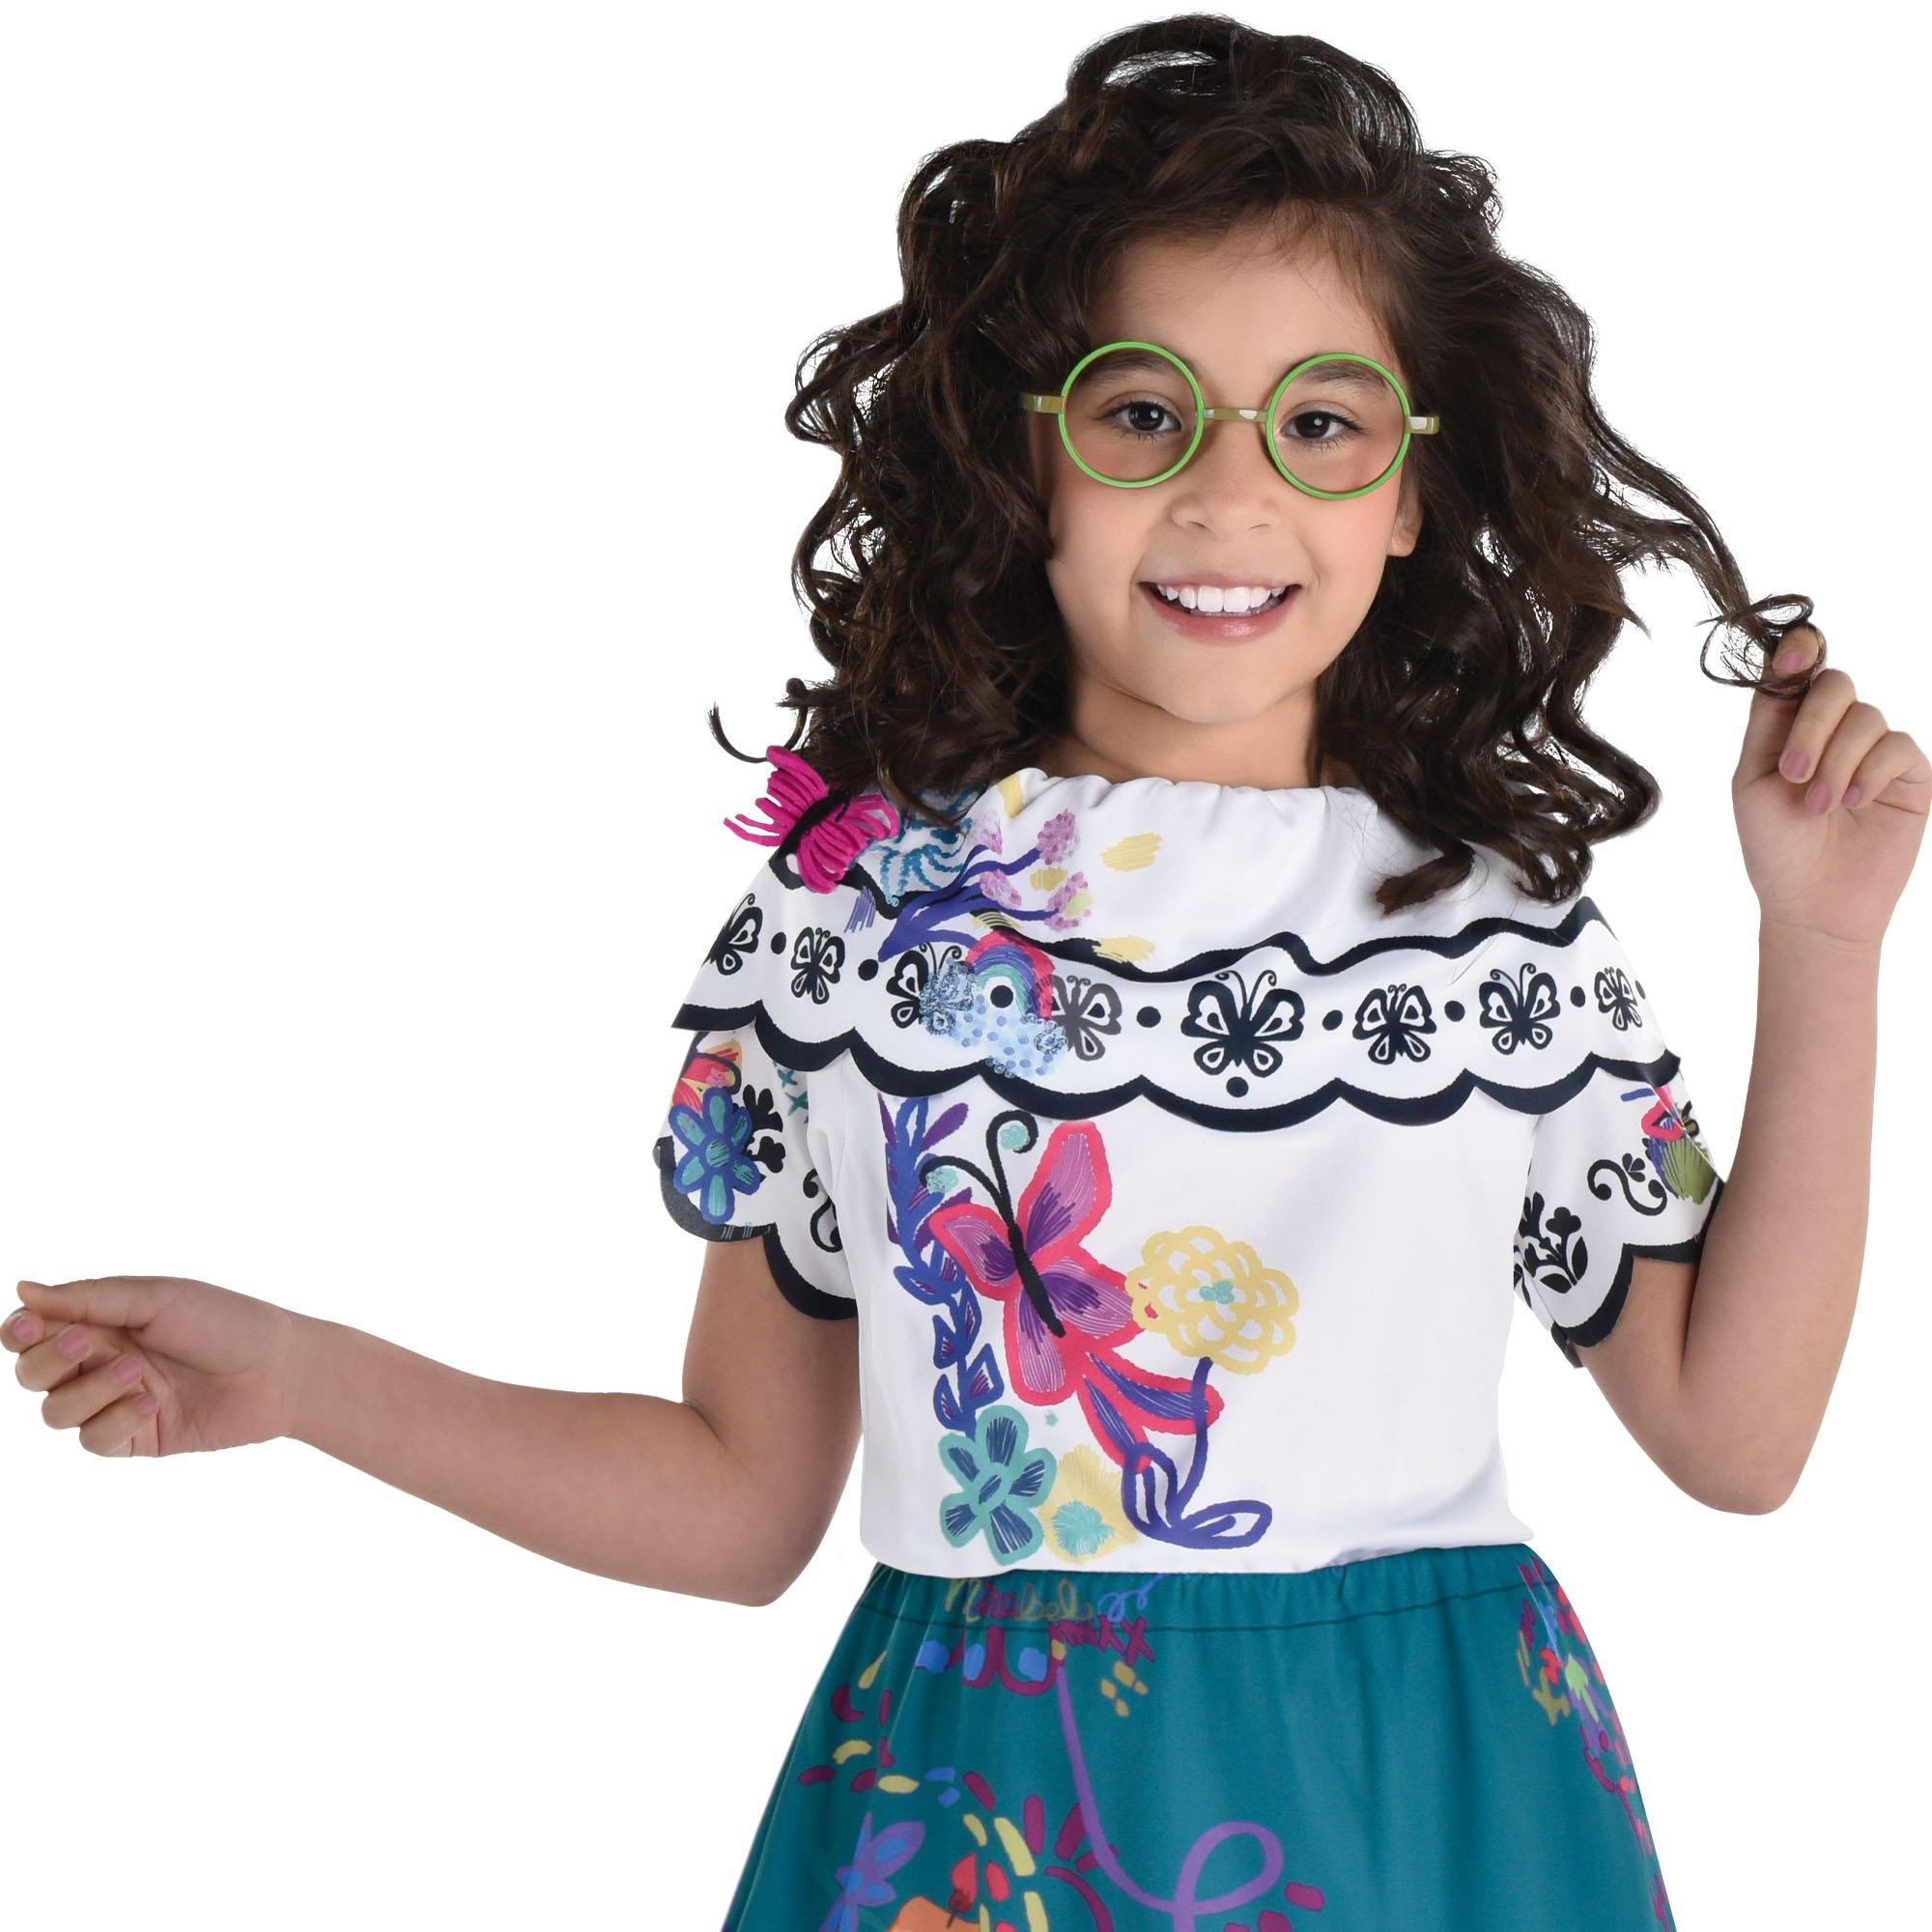 Isabela Madrigal Costume for Kids – Encanto